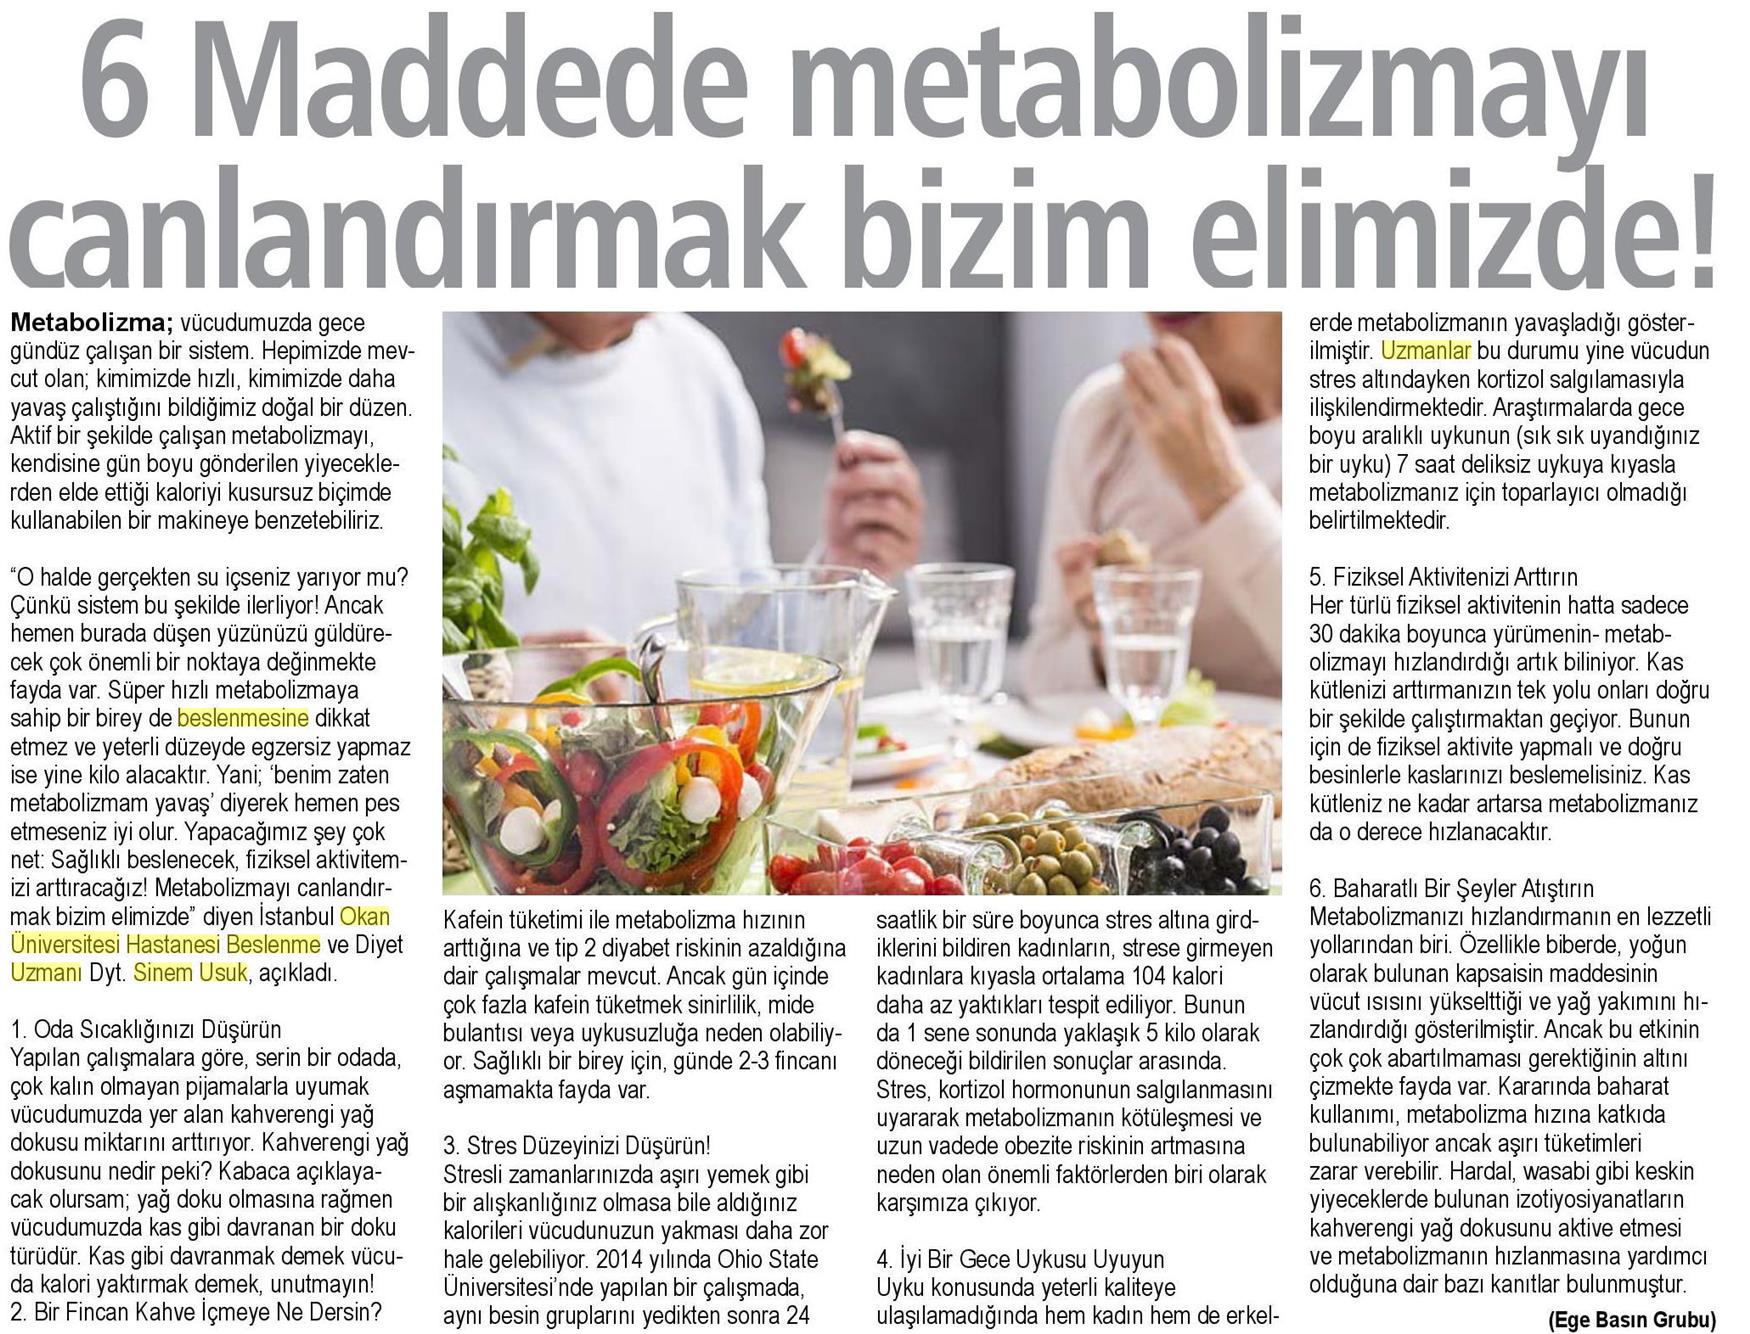 20.03.2019 Sağlık Gazetesi 6 MADDEDE METABOLİZMAYI CANLANDIRMAK BİZİM ELİMİZDE!